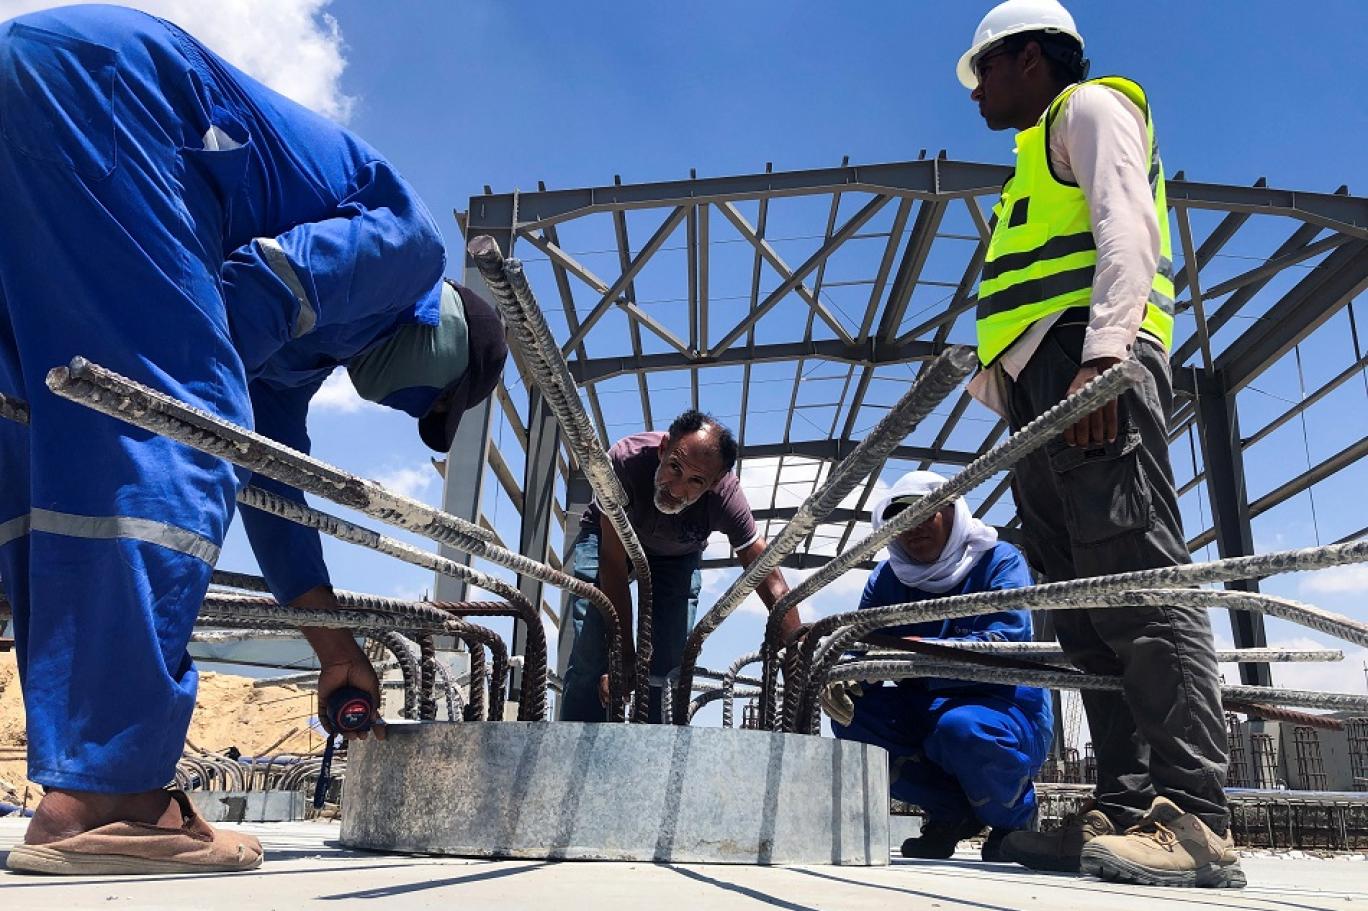 أعمال البناء جارية لإنشاء منطقة صناعية للتصدير وللسوق المحلي بالقرب من قناة السويس، شرق بورسعيد (وكالات)